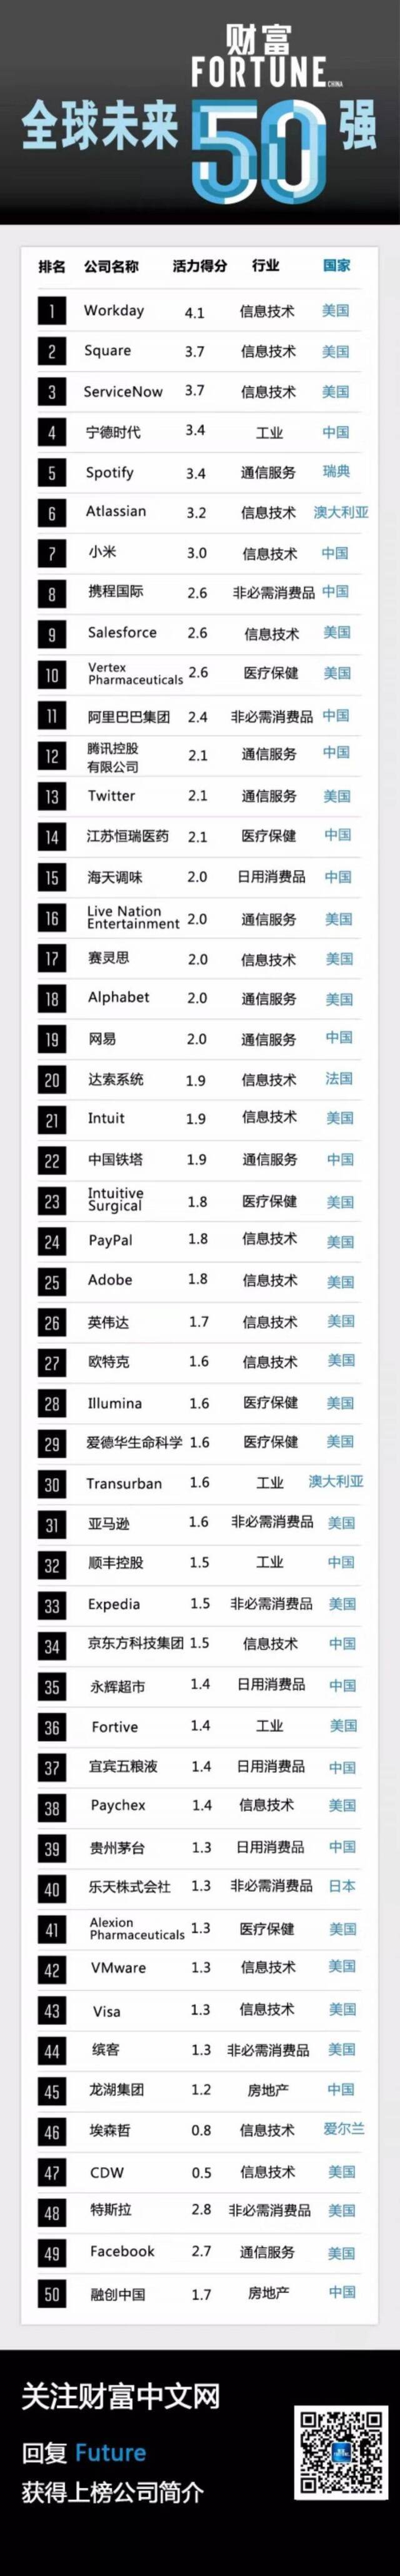 16家中国公司上榜财富未来50强 宁德时代排名第四